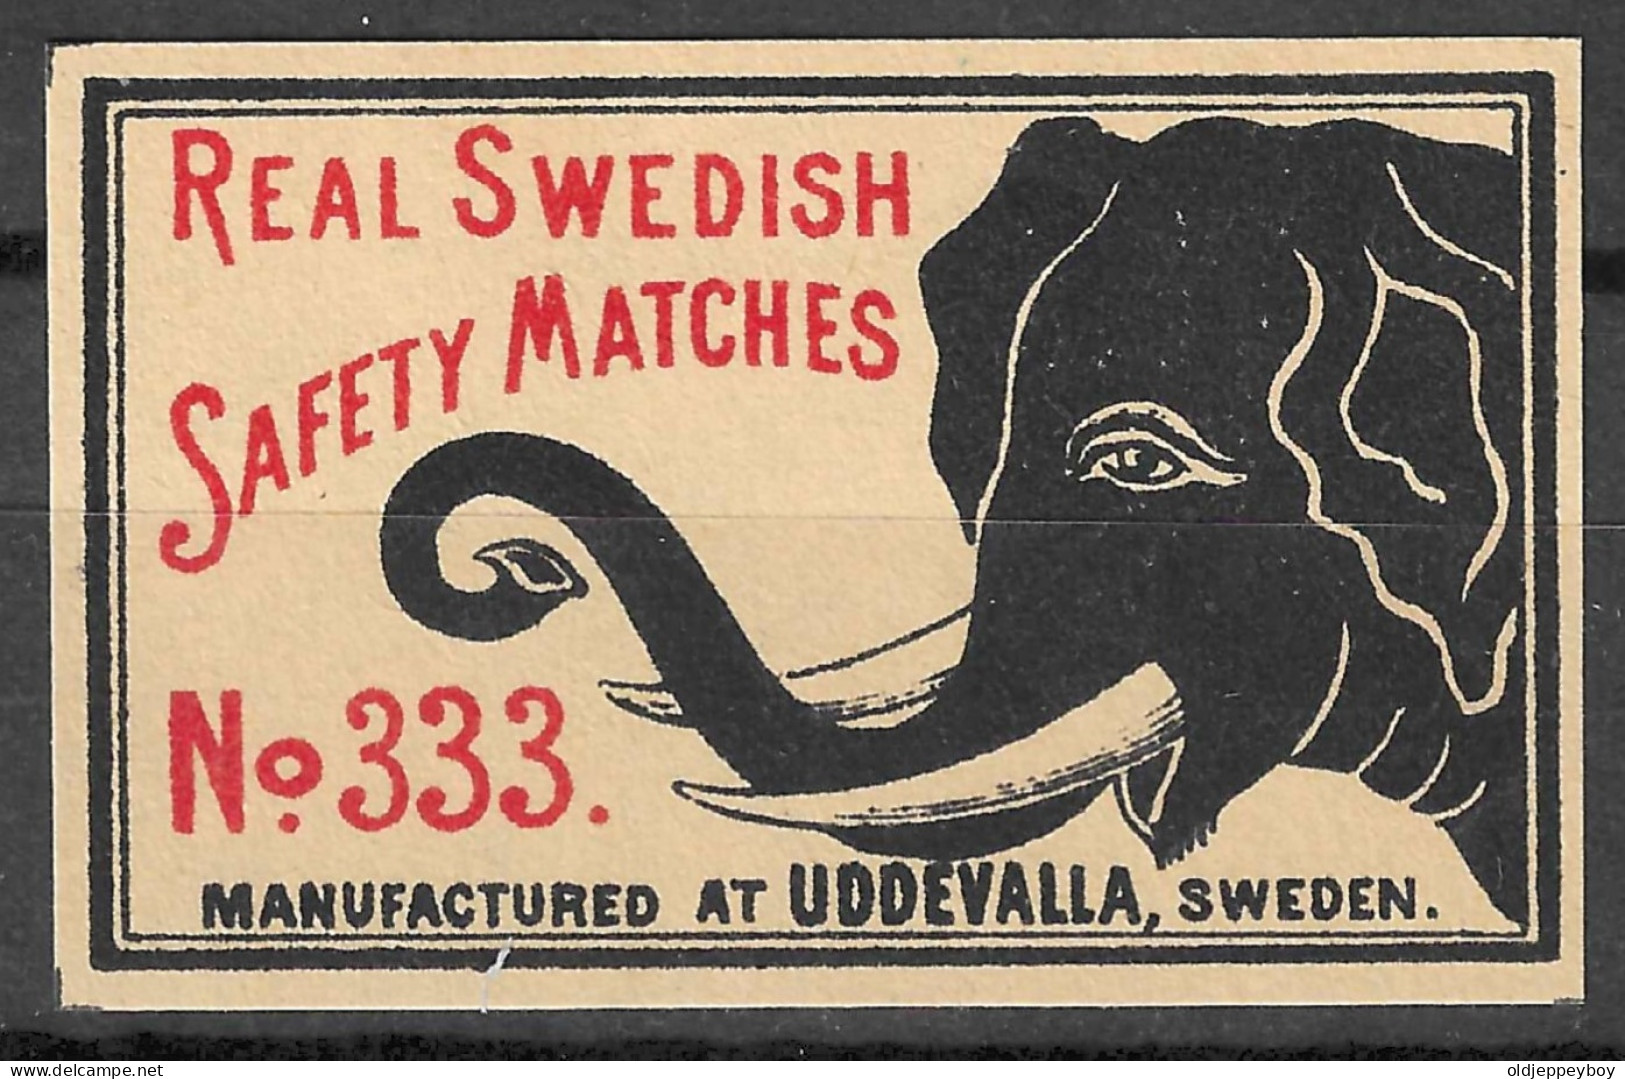 MADE IN SWEDEN UDDEVALLE VINTAGE Phillumeny MATCHBOX LABEL REAL SWEDISH SAFETY MATCHES Nº333  5.5  X 3.5 CM  RARE - Luciferdozen - Etiketten